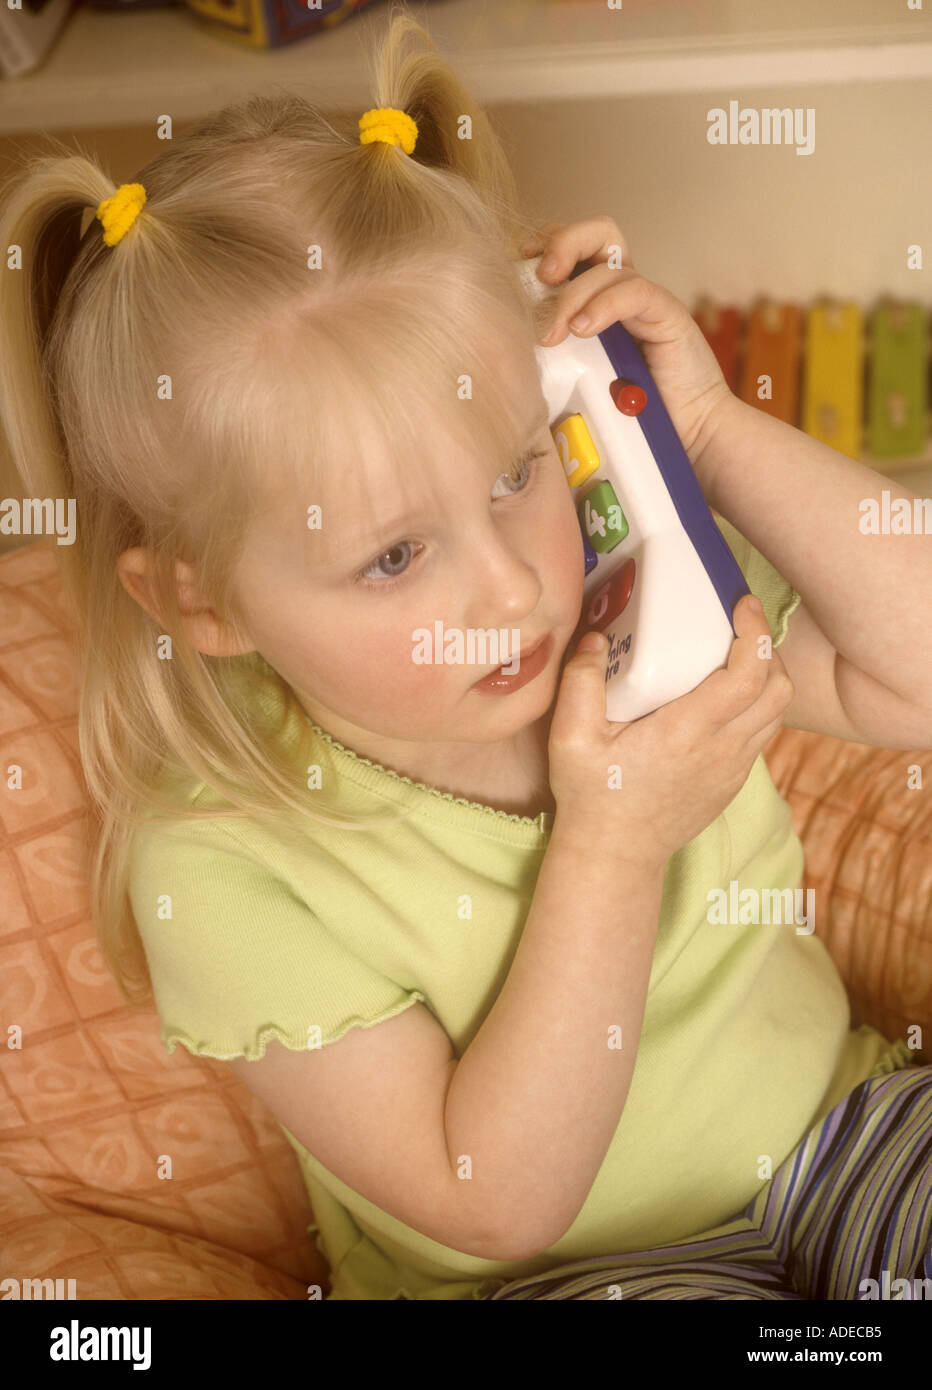 Jeune fille jouant avec des jouets en plastique téléphone Banque D'Images